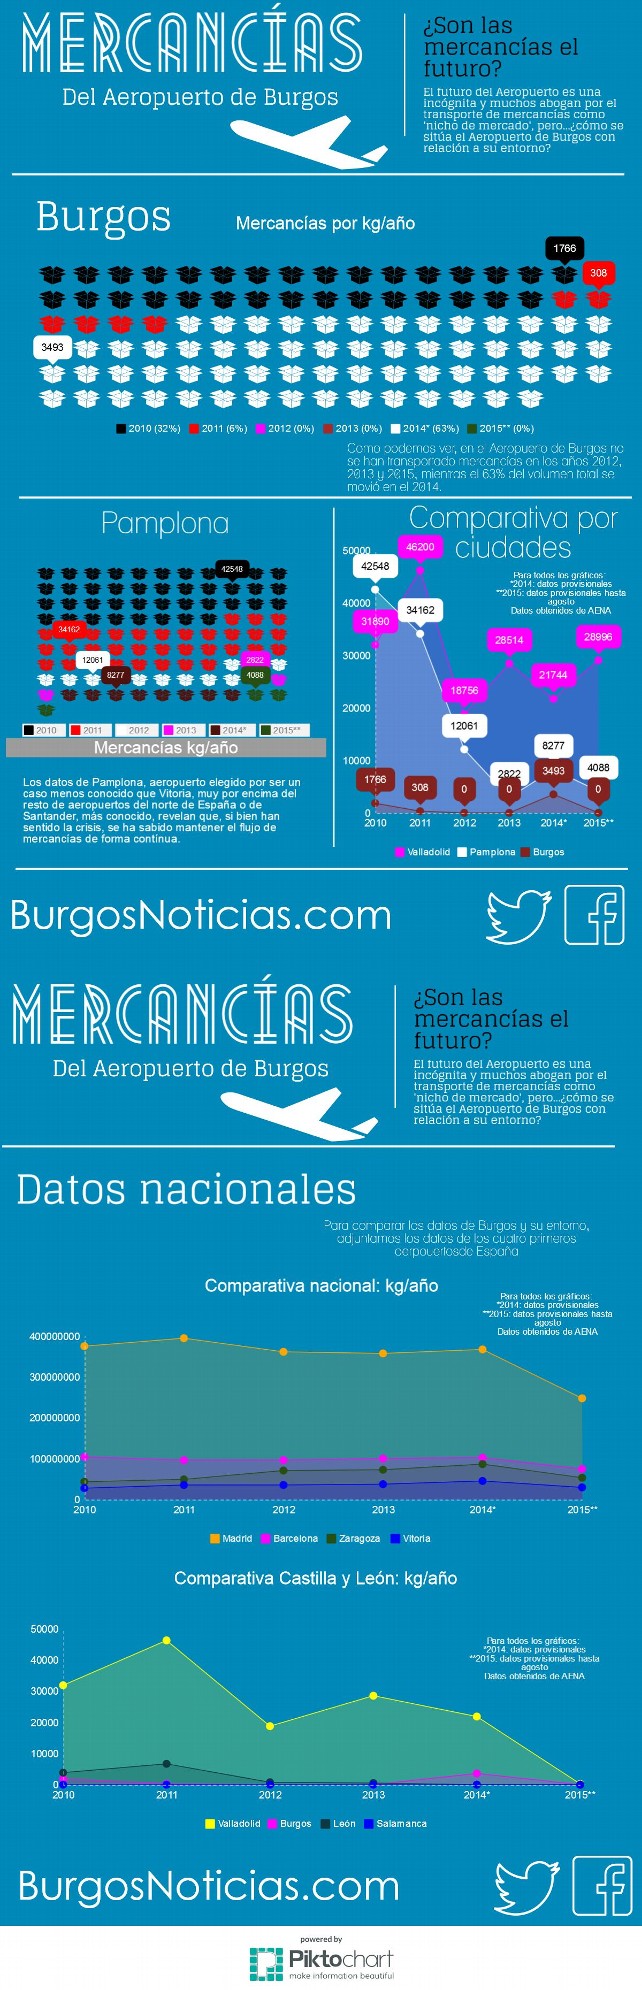 Mercancías del Aeropuerto de Burgos, en comparativa